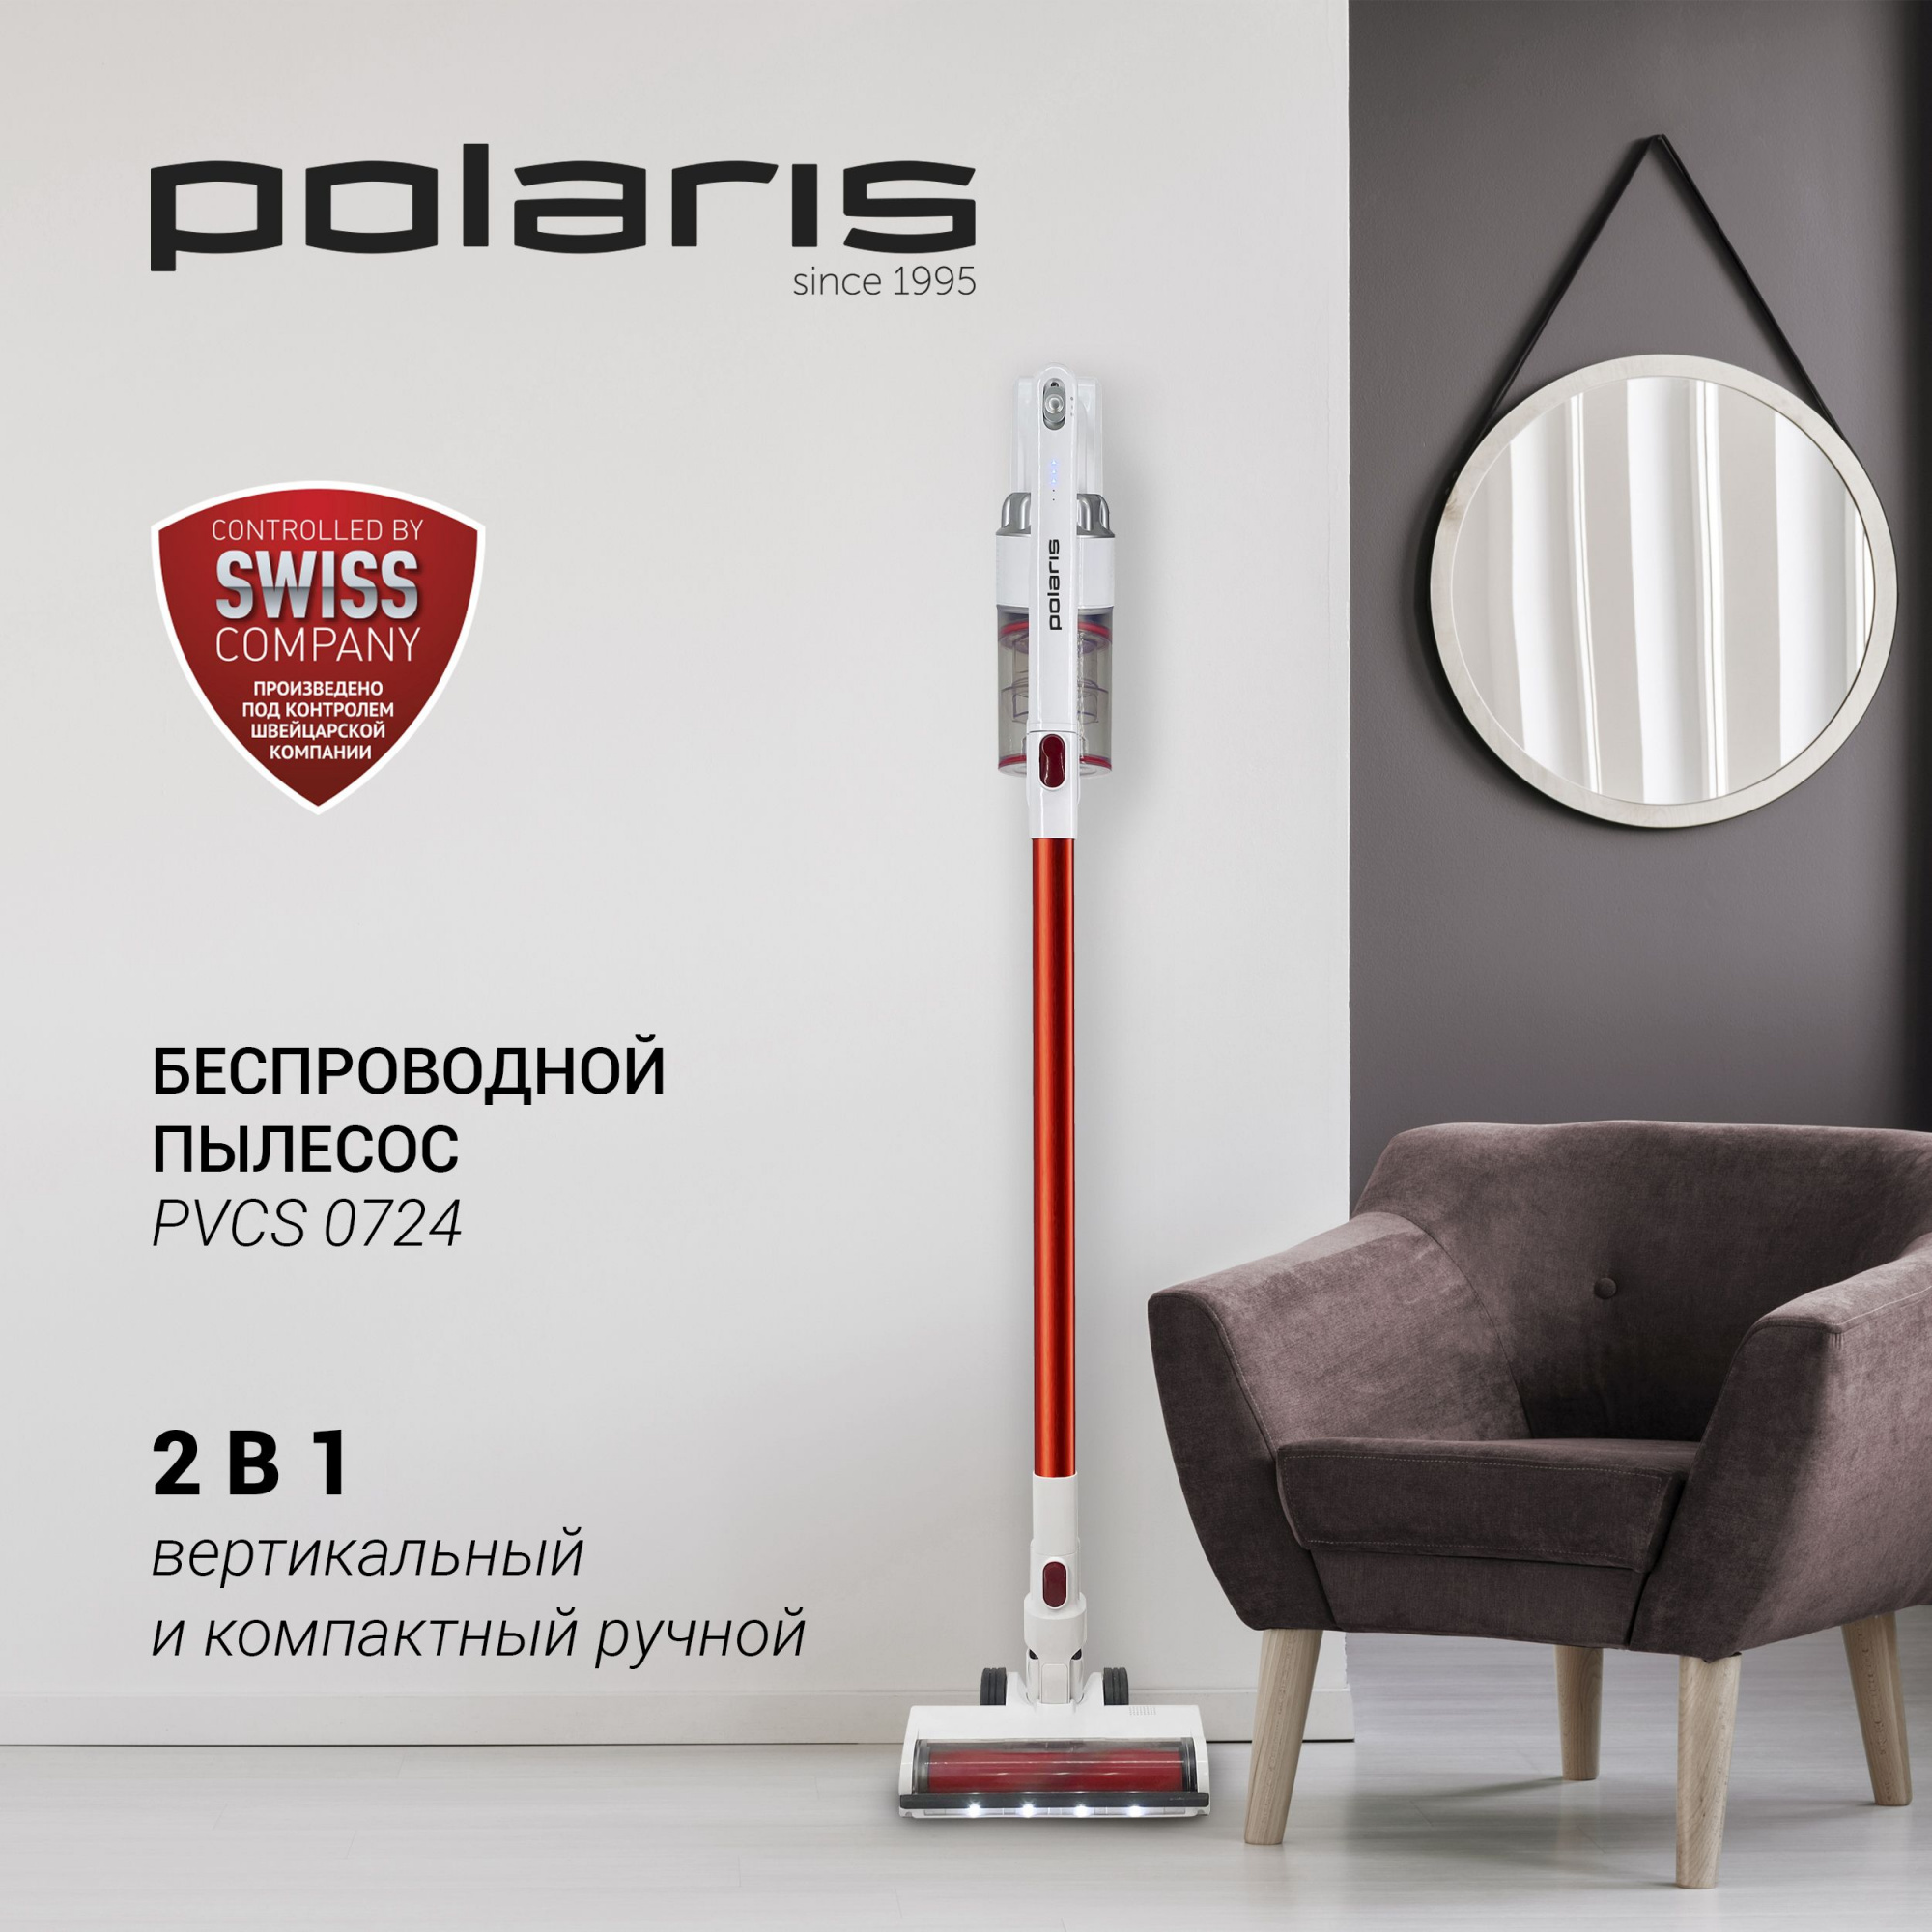 Пылесос ручной Polaris PVCS 0724, белый/красный